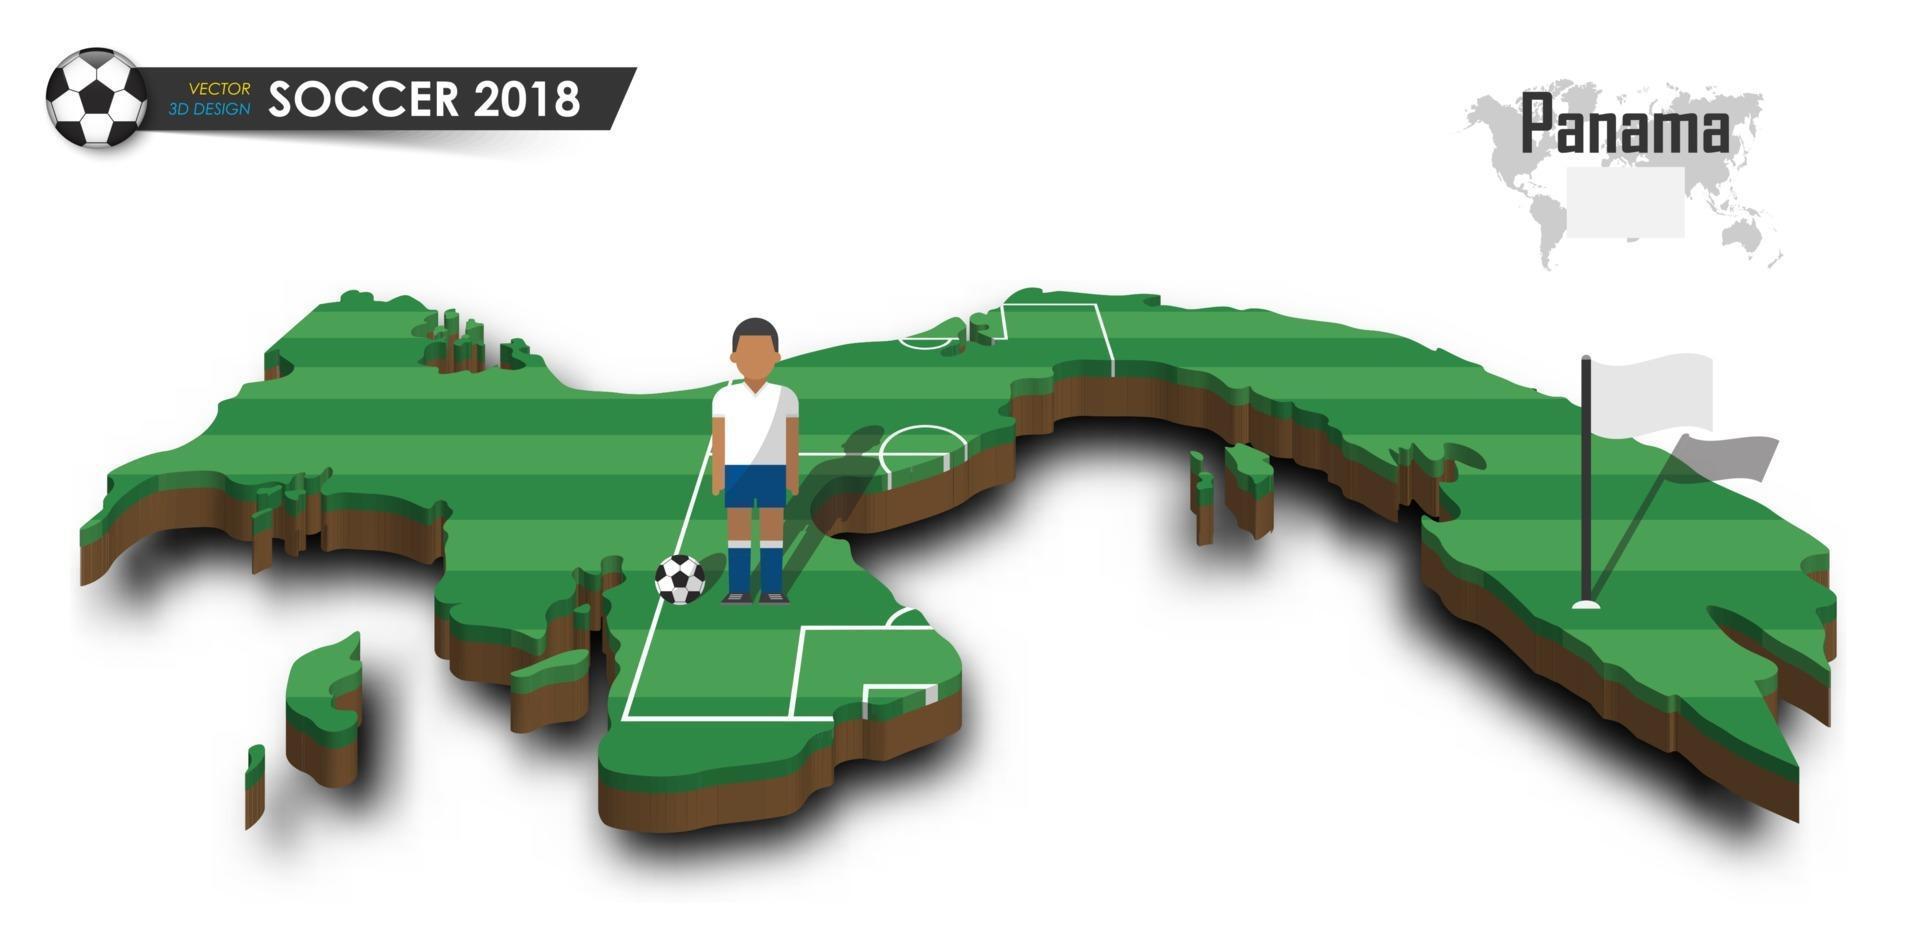 Jugador de fútbol del equipo nacional de fútbol de Panamá y la bandera en el mapa del país de diseño 3d vector de fondo aislado para el concepto del torneo del campeonato mundial internacional 2018